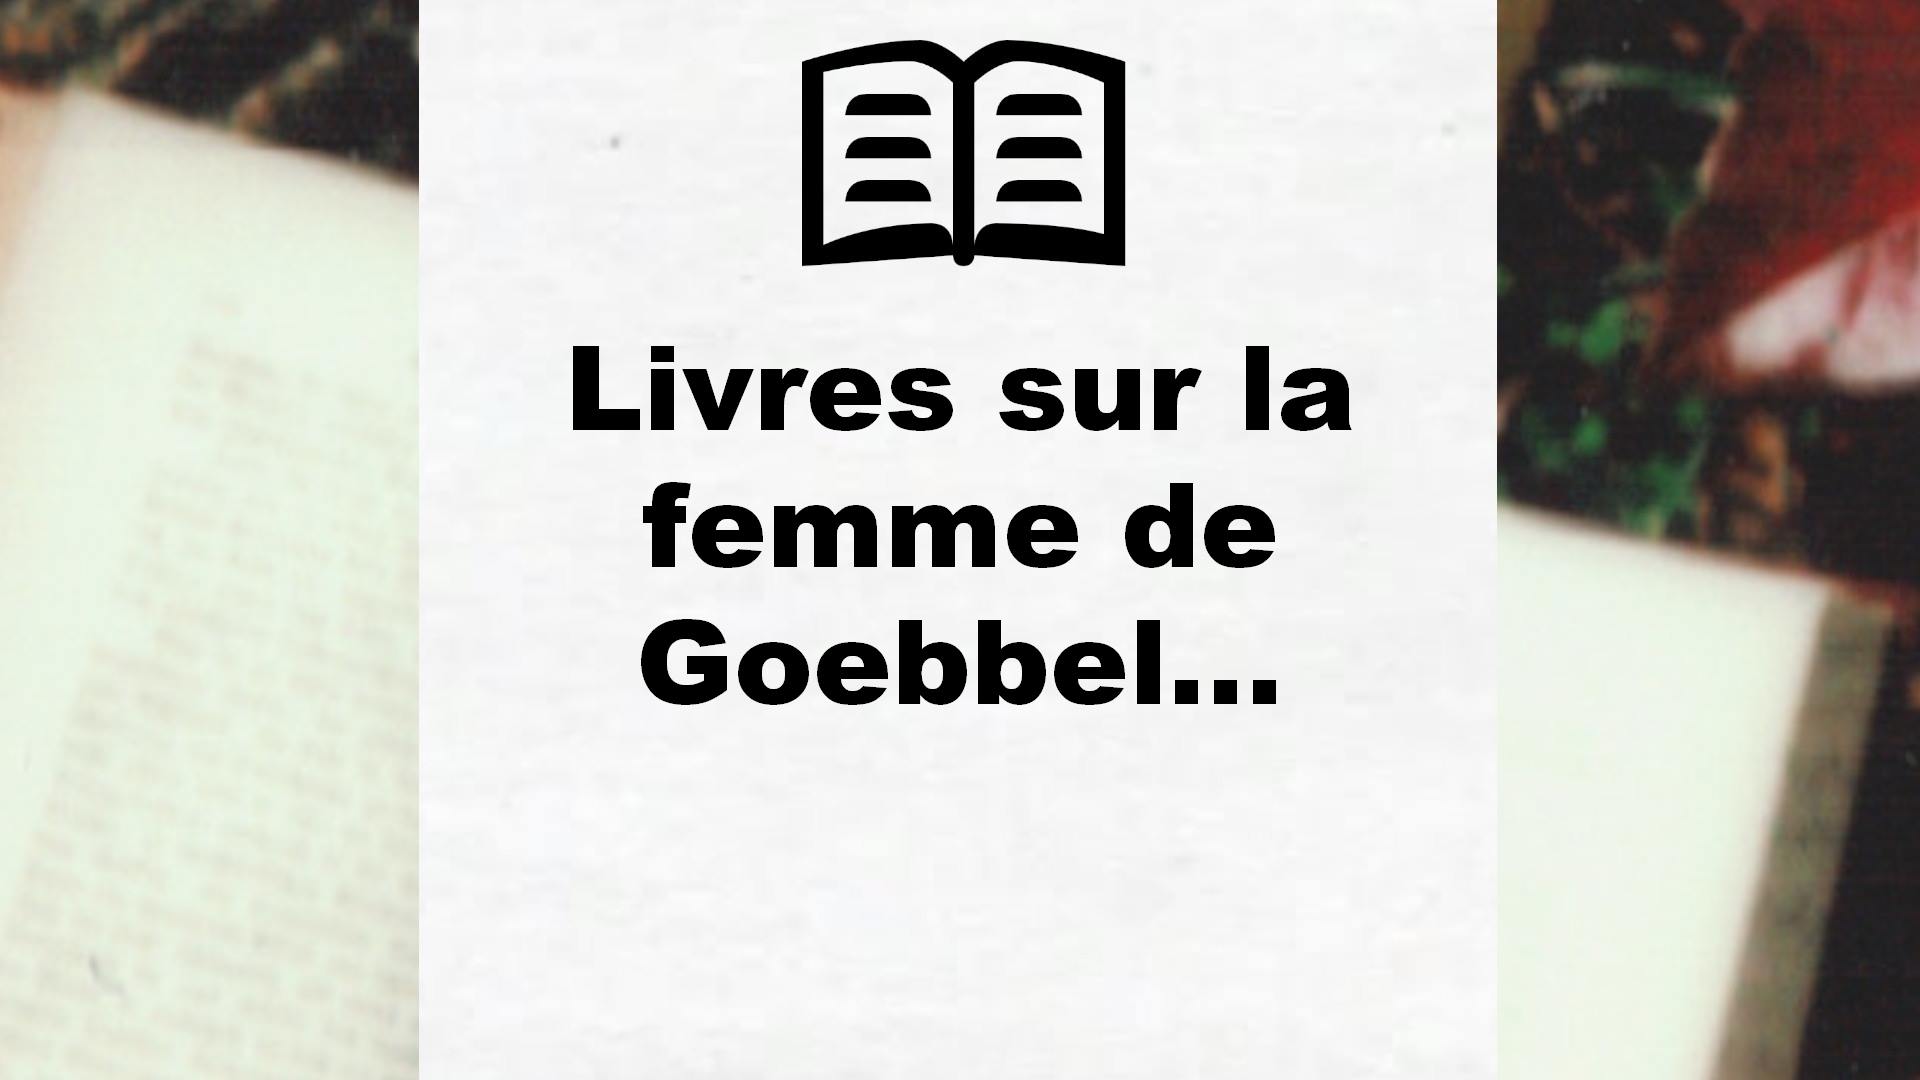 Livres sur la femme de Goebbels